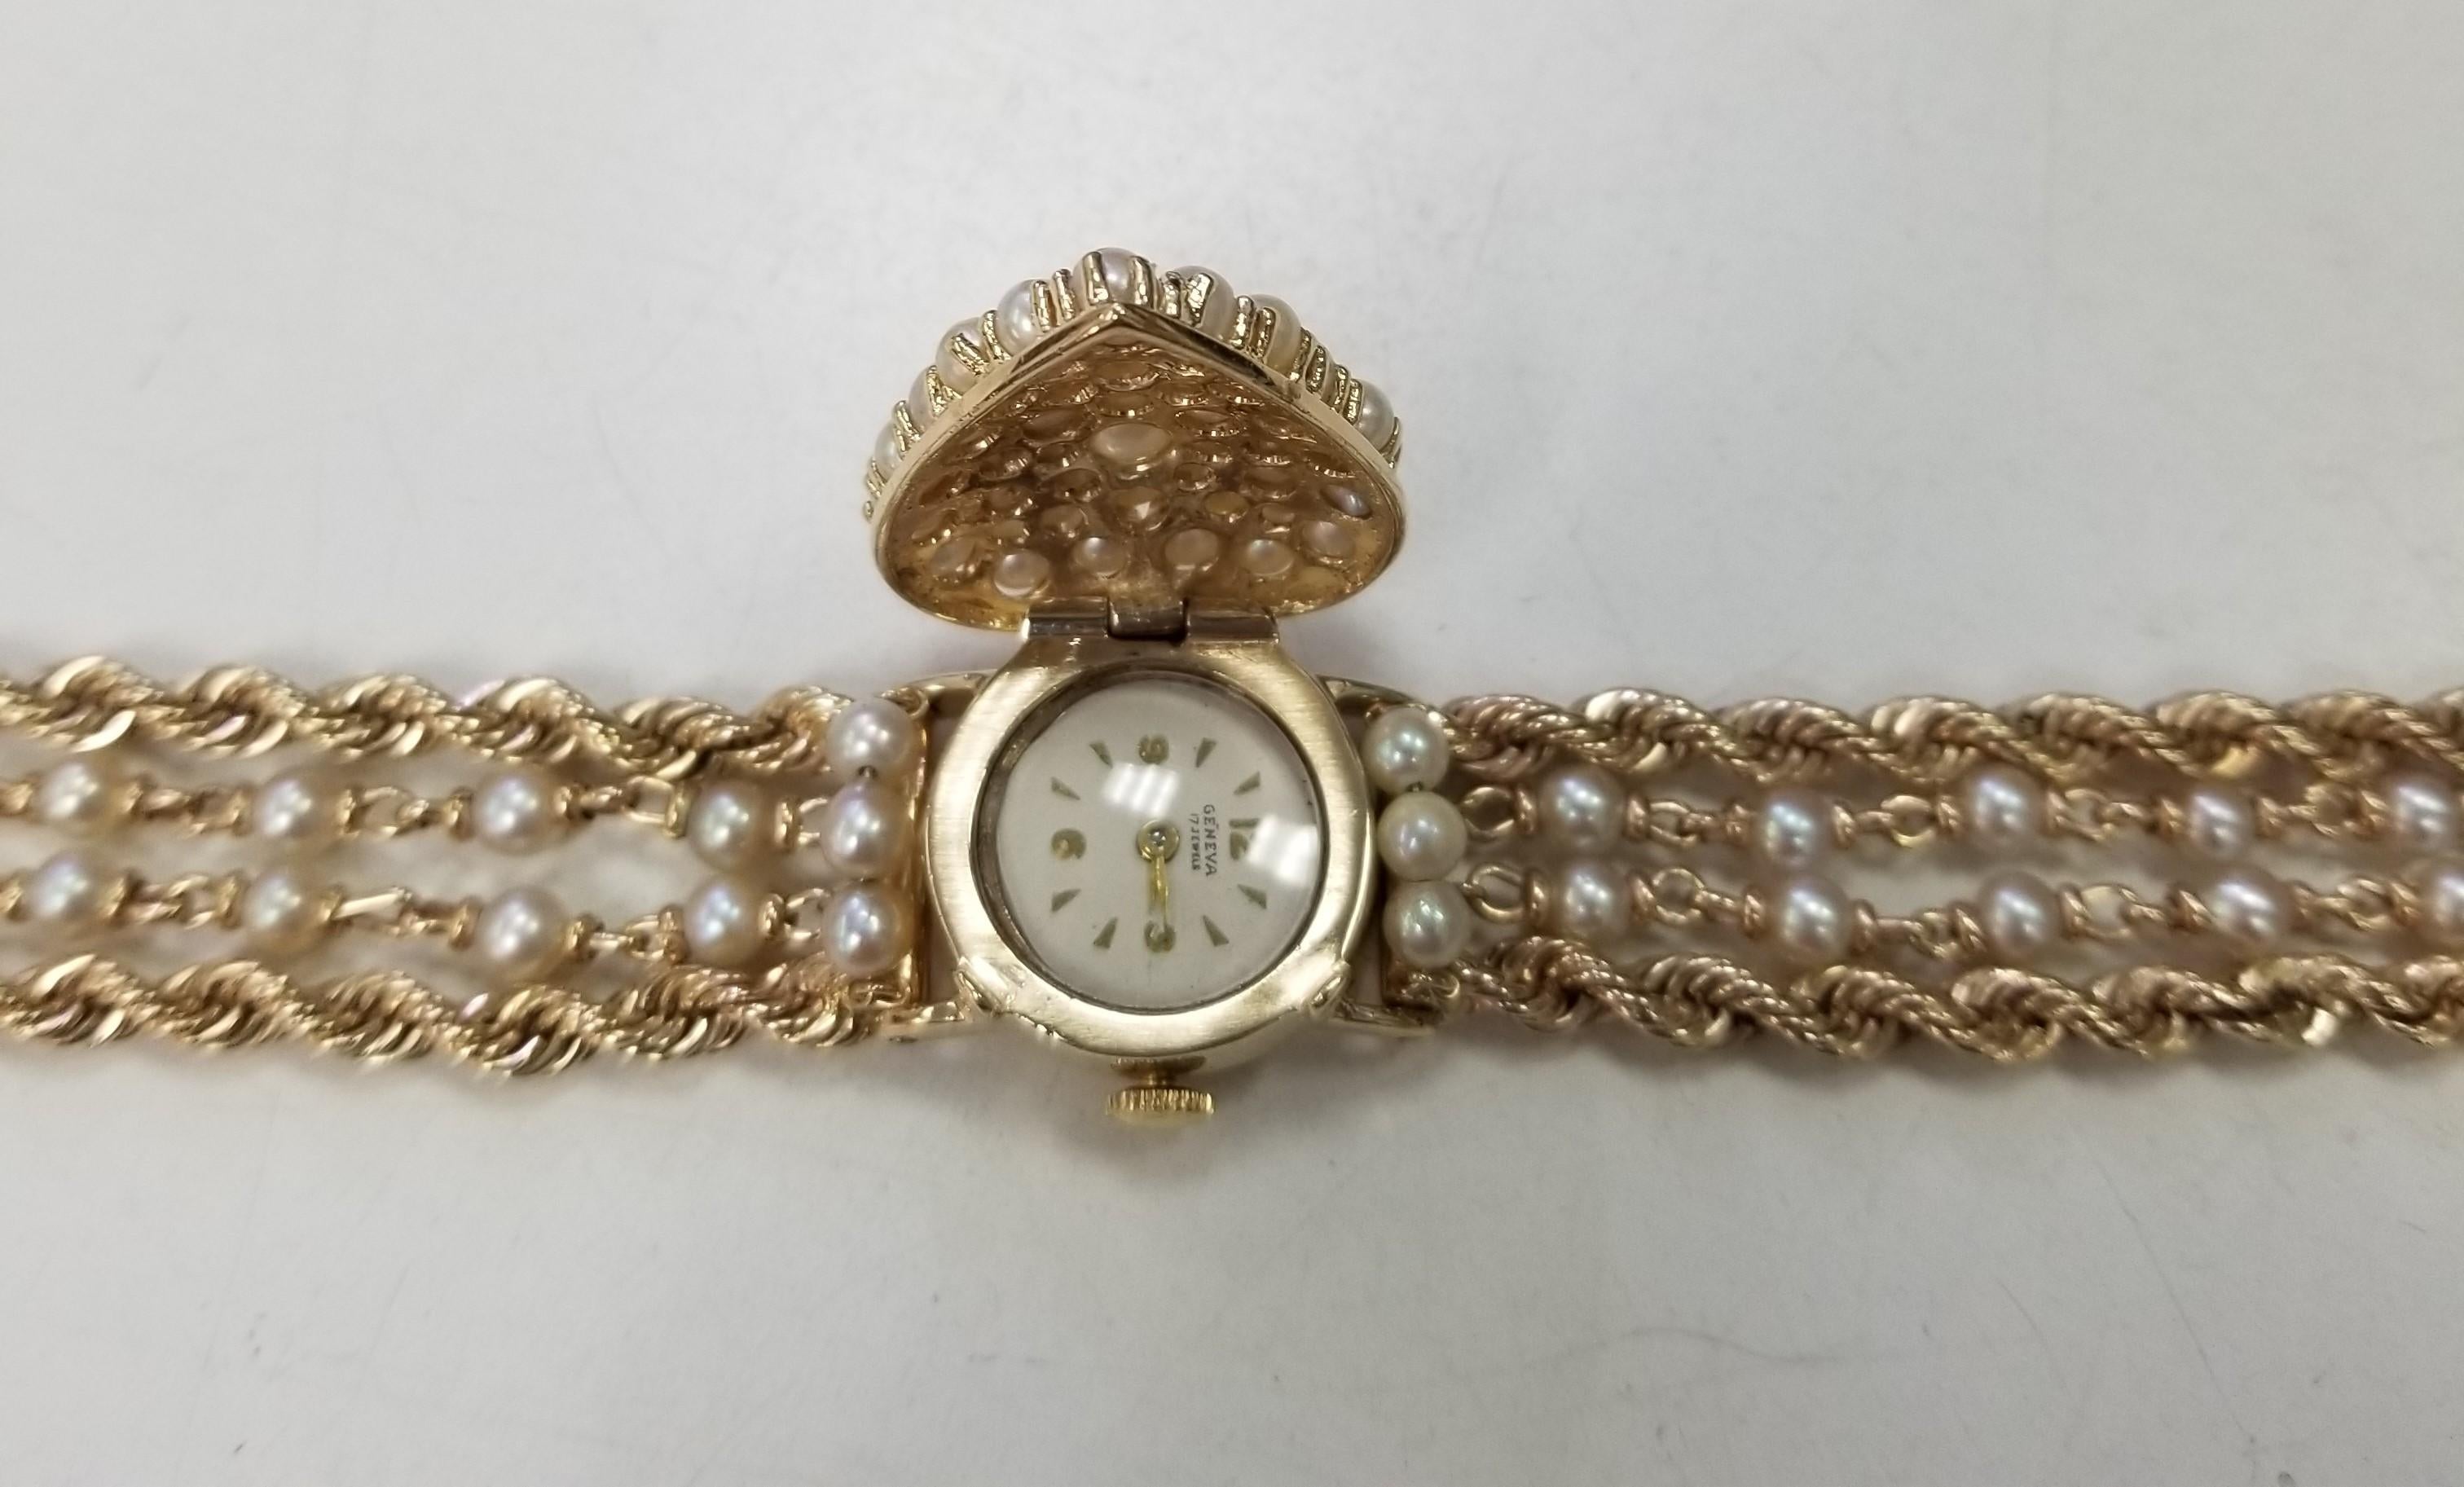 Vintage Geneve 14 Karat Gelb Perle & Gold Seil Armbanduhr mit versteckten Uhr.  Die Uhr ist ein Geneve-Handwerk mit 17 Steinen und einer Sicherheitsschließe.  Die Uhr hat ein gewartetes Uhrwerk.  Die Breite beträgt 26 mm und wiegt 73 Gramm. Die